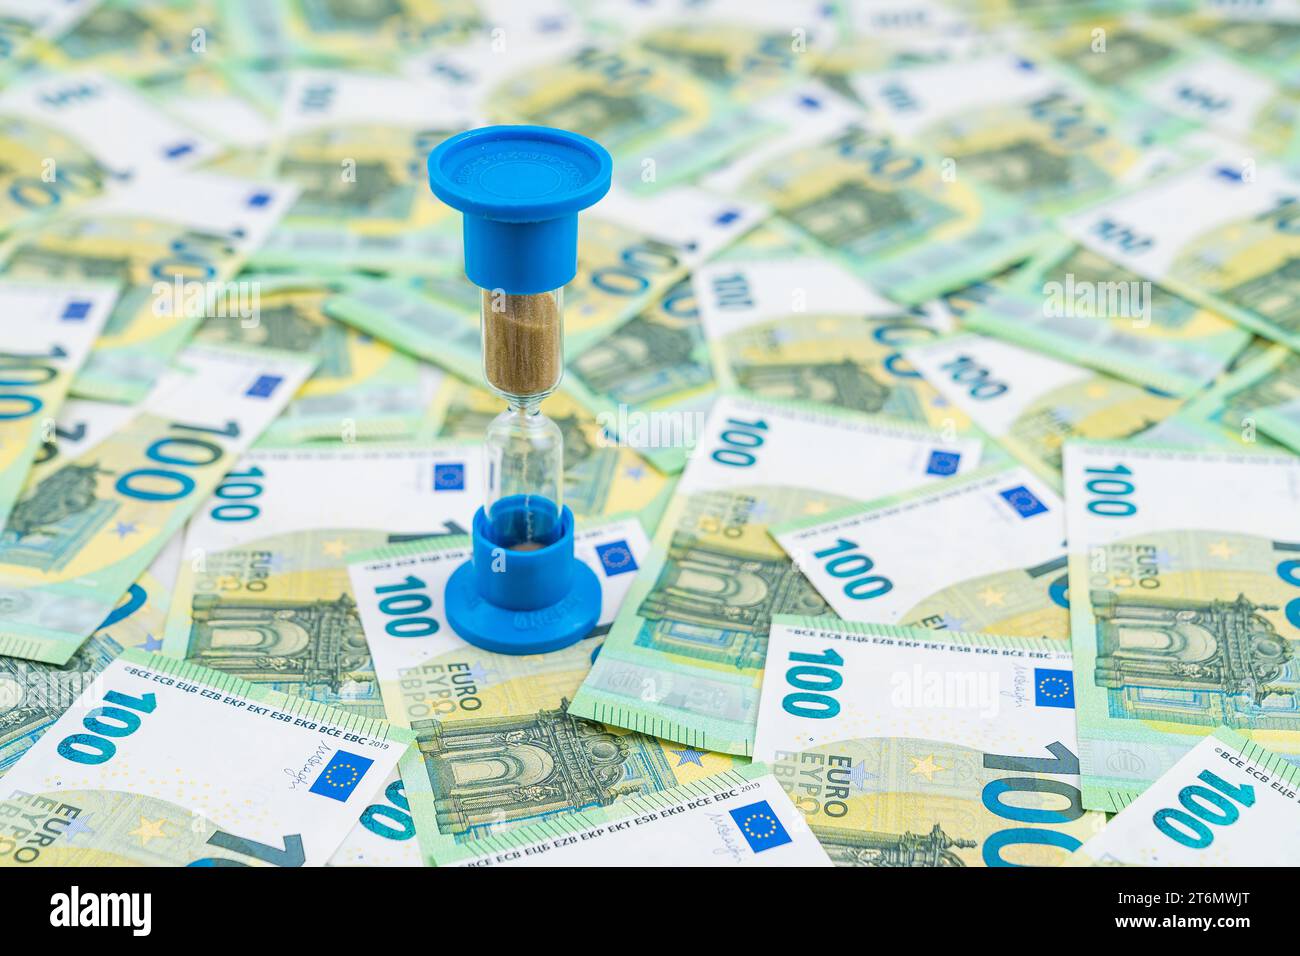 Sanduhr auf dem Hintergrund vieler Banknoten, Euro-Geldscheine, 100 Euro. Konzepte von Investitionen, Rentengeld und Geldbewegung. Hohe Qualität Stockfoto